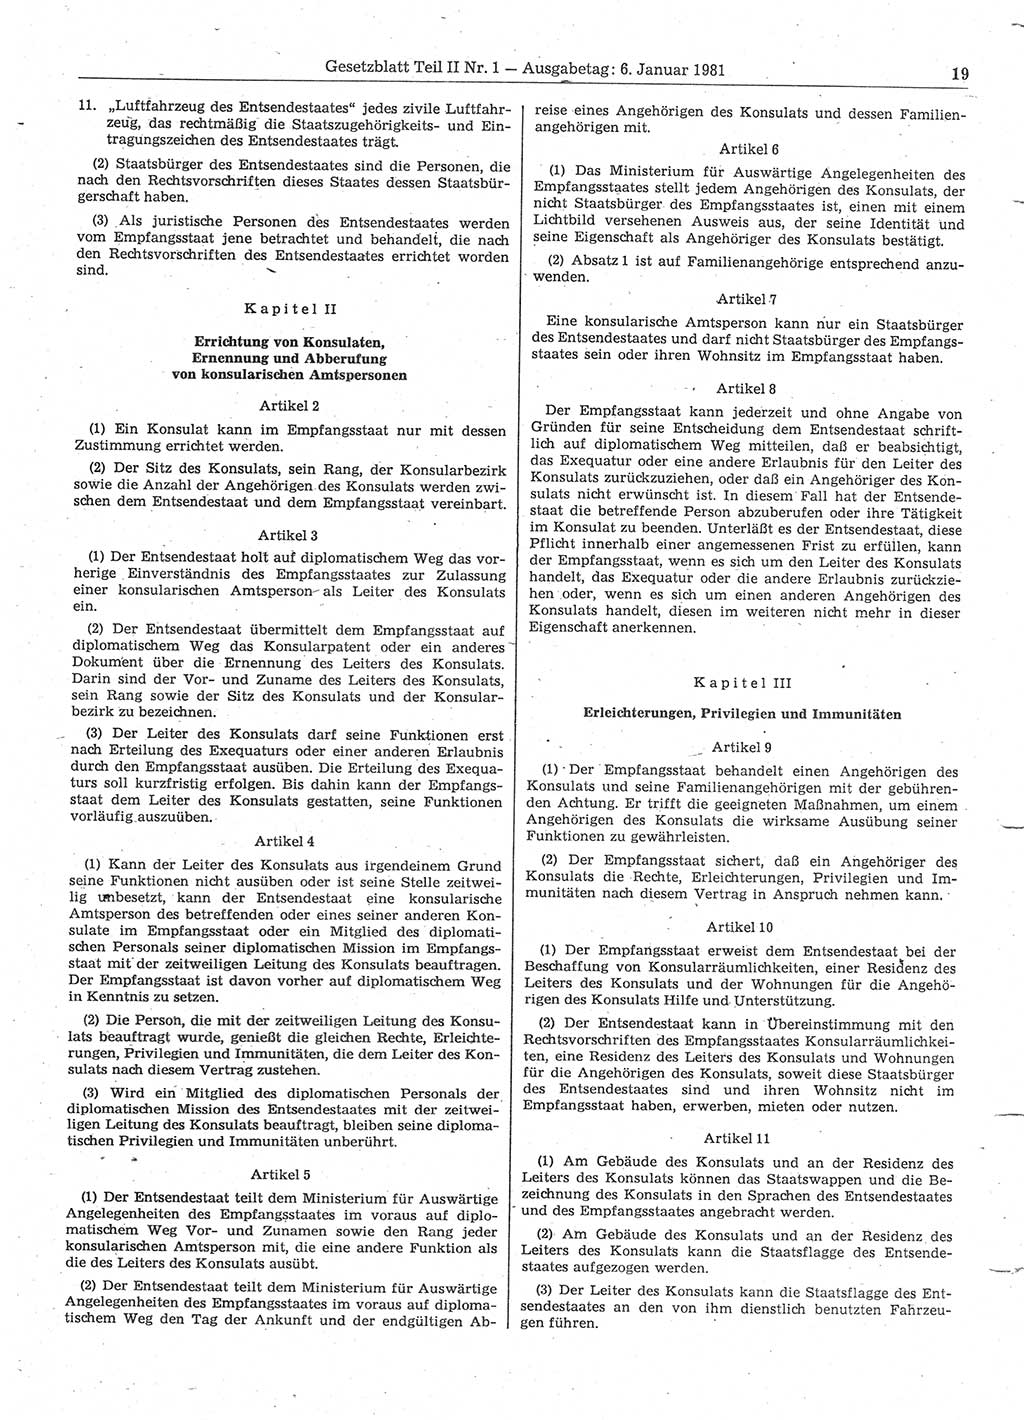 Gesetzblatt (GBl.) der Deutschen Demokratischen Republik (DDR) Teil ⅠⅠ 1981, Seite 19 (GBl. DDR ⅠⅠ 1981, S. 19)